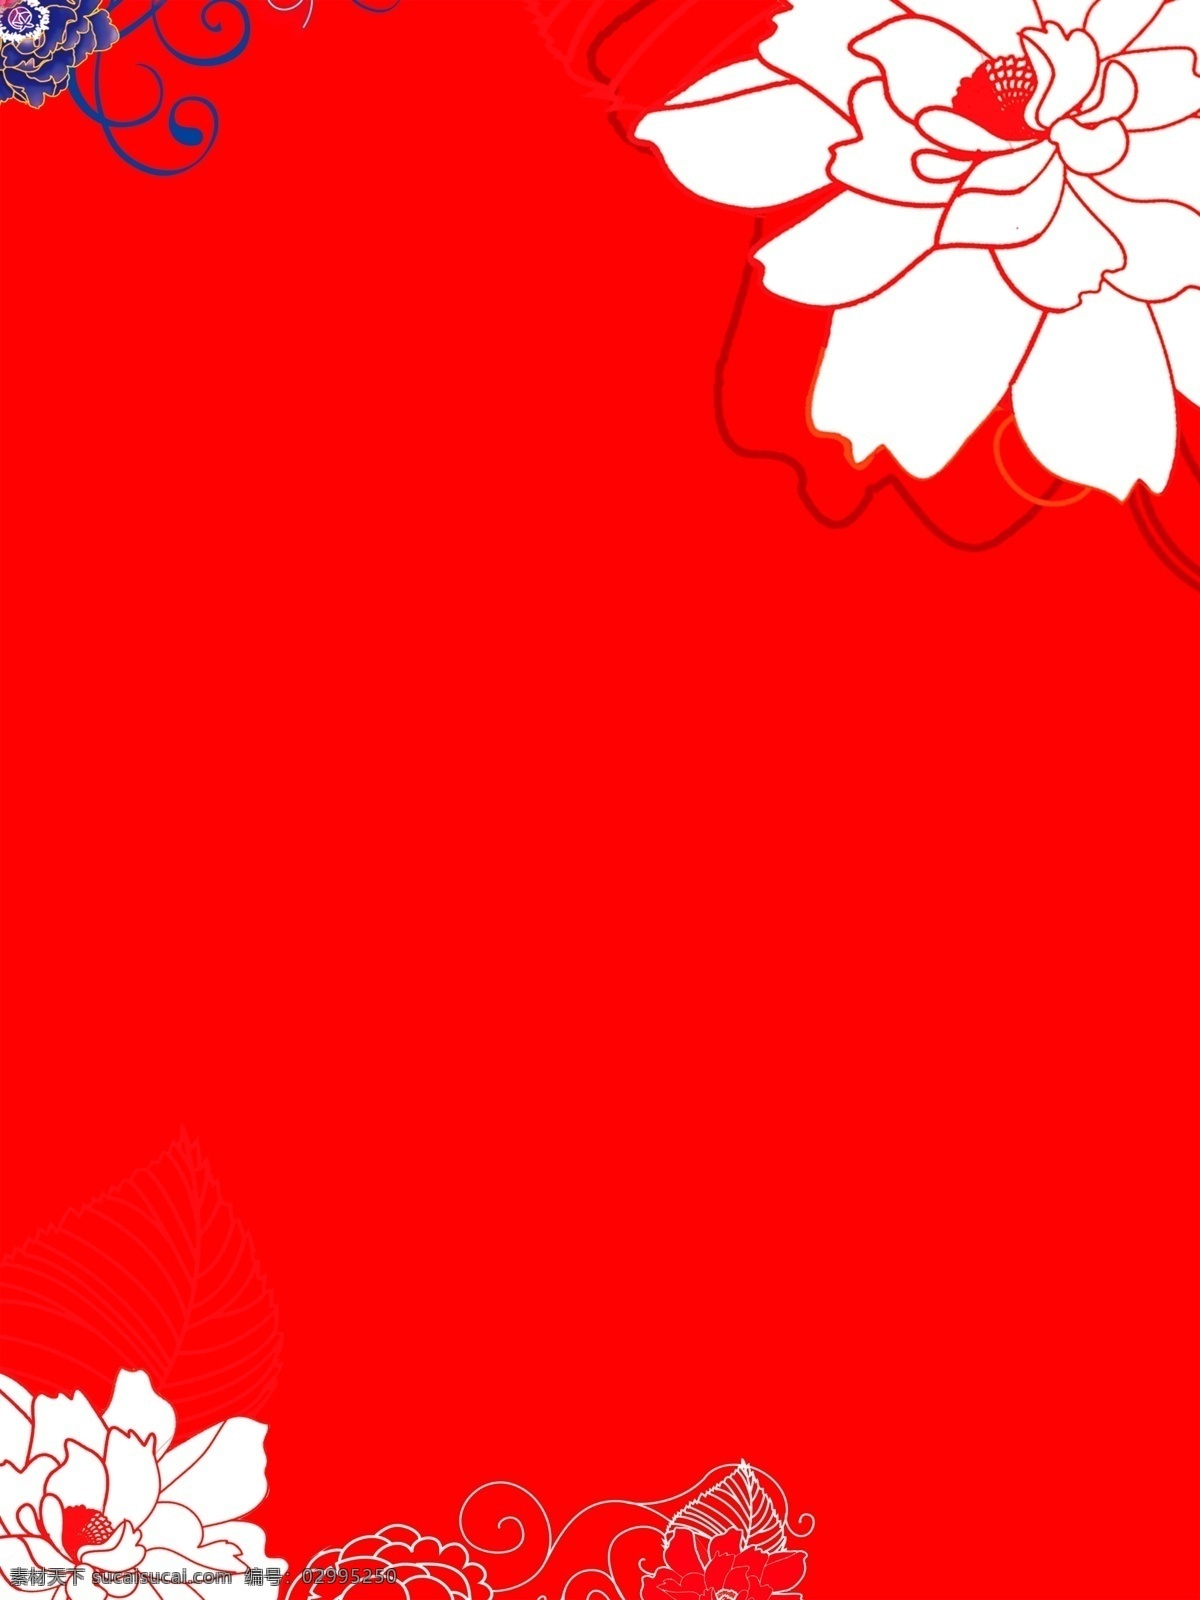 手绘 花朵 红色 底纹 广告 背景 邀请函 请柬 大气 简约 背景素材 大花朵 红色底纹 精美 高雅 高端 广告背景素材